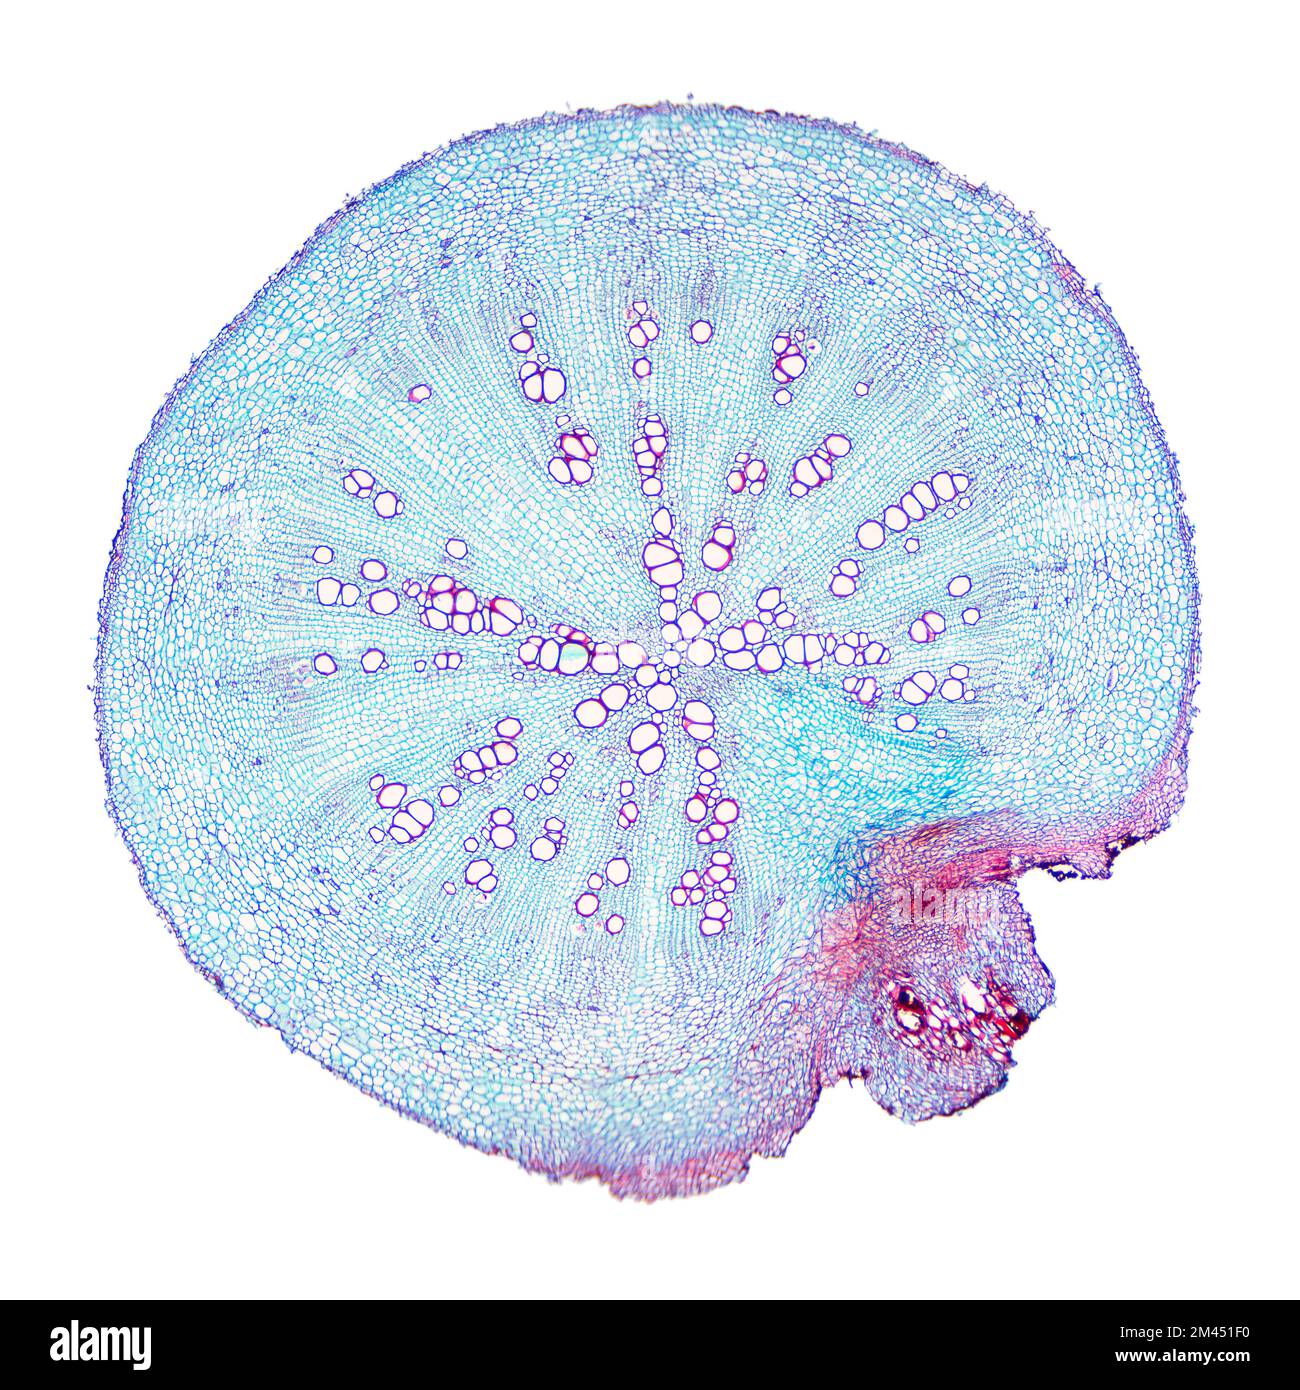 Radice di rafano, sezione trasversale al microscopio ottico. Sezione trasversale attraverso la radice della pianta di Raphanus sativus. Micrografia con ingrandimento 8X. Foto Stock